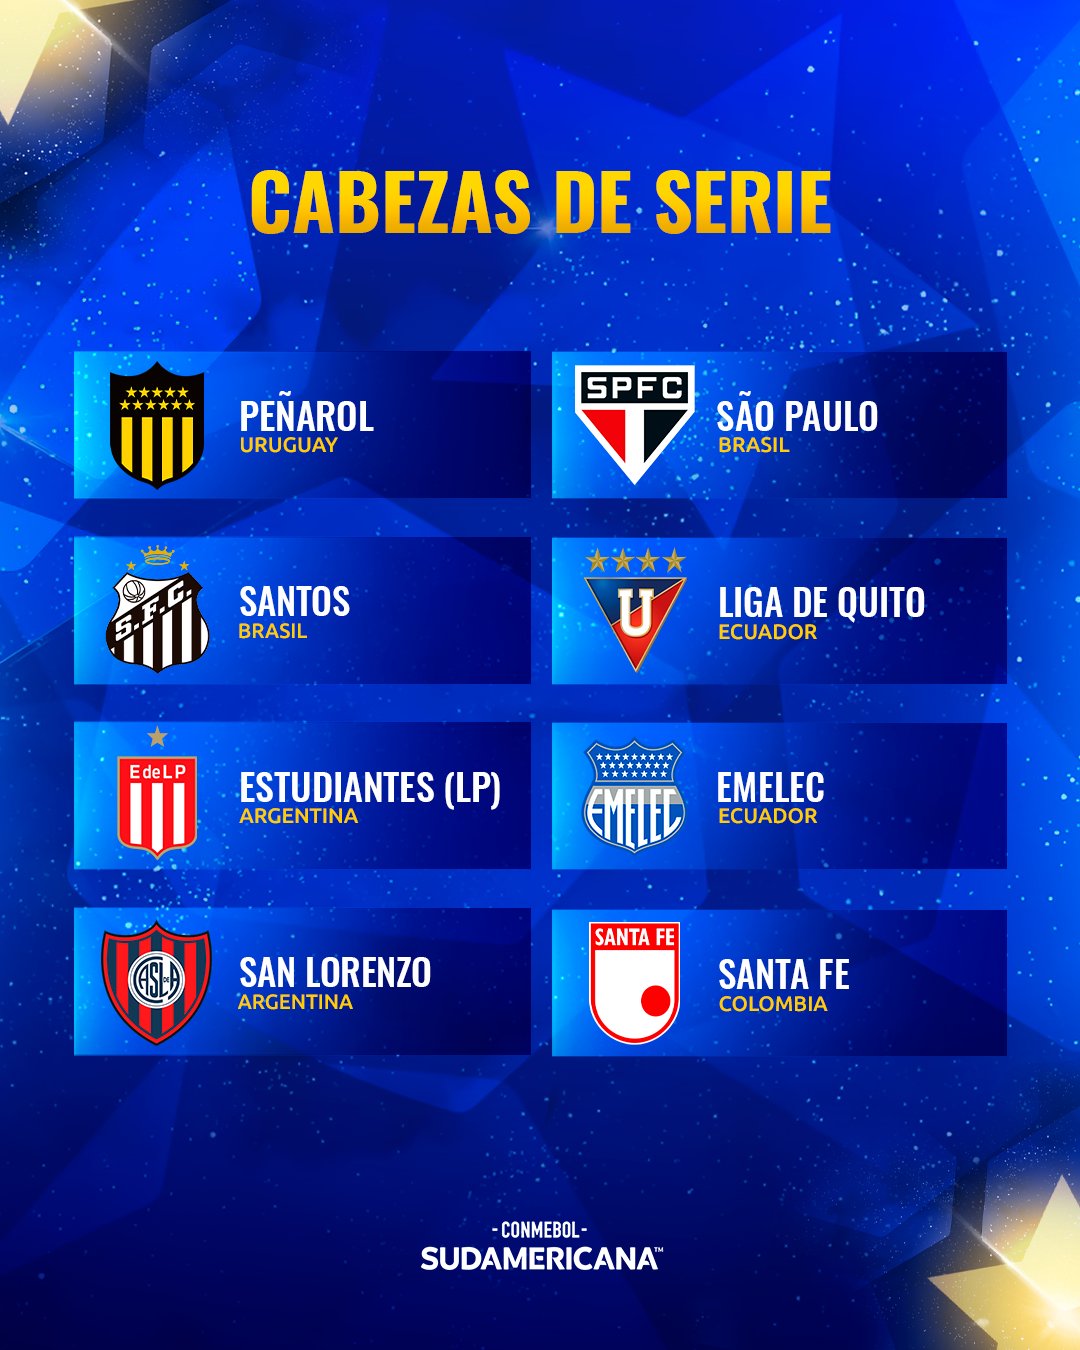 Los 8 clubes que son cabezas de serie para los grupos de la Copa Sudamericana